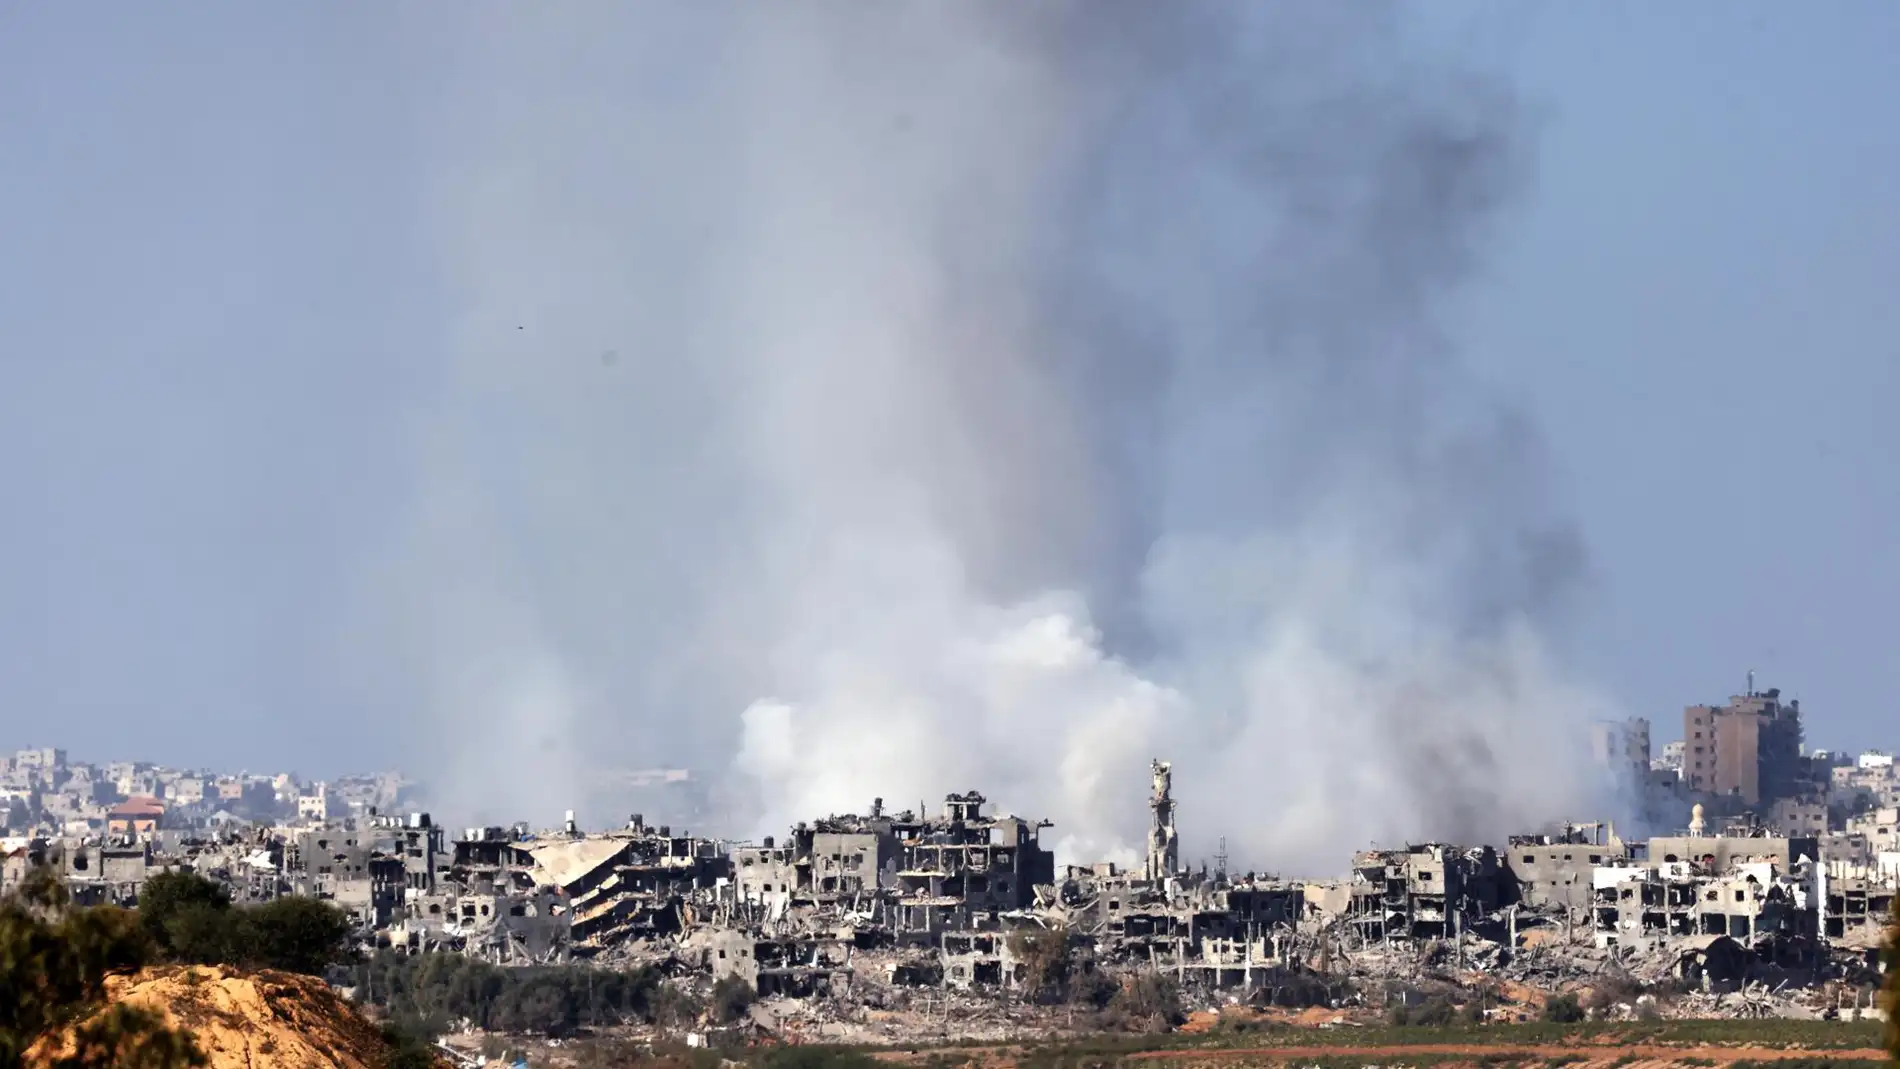 El humo se eleva en la parte norte de la Franja de Gaza, visto desde Sderot, Israel.